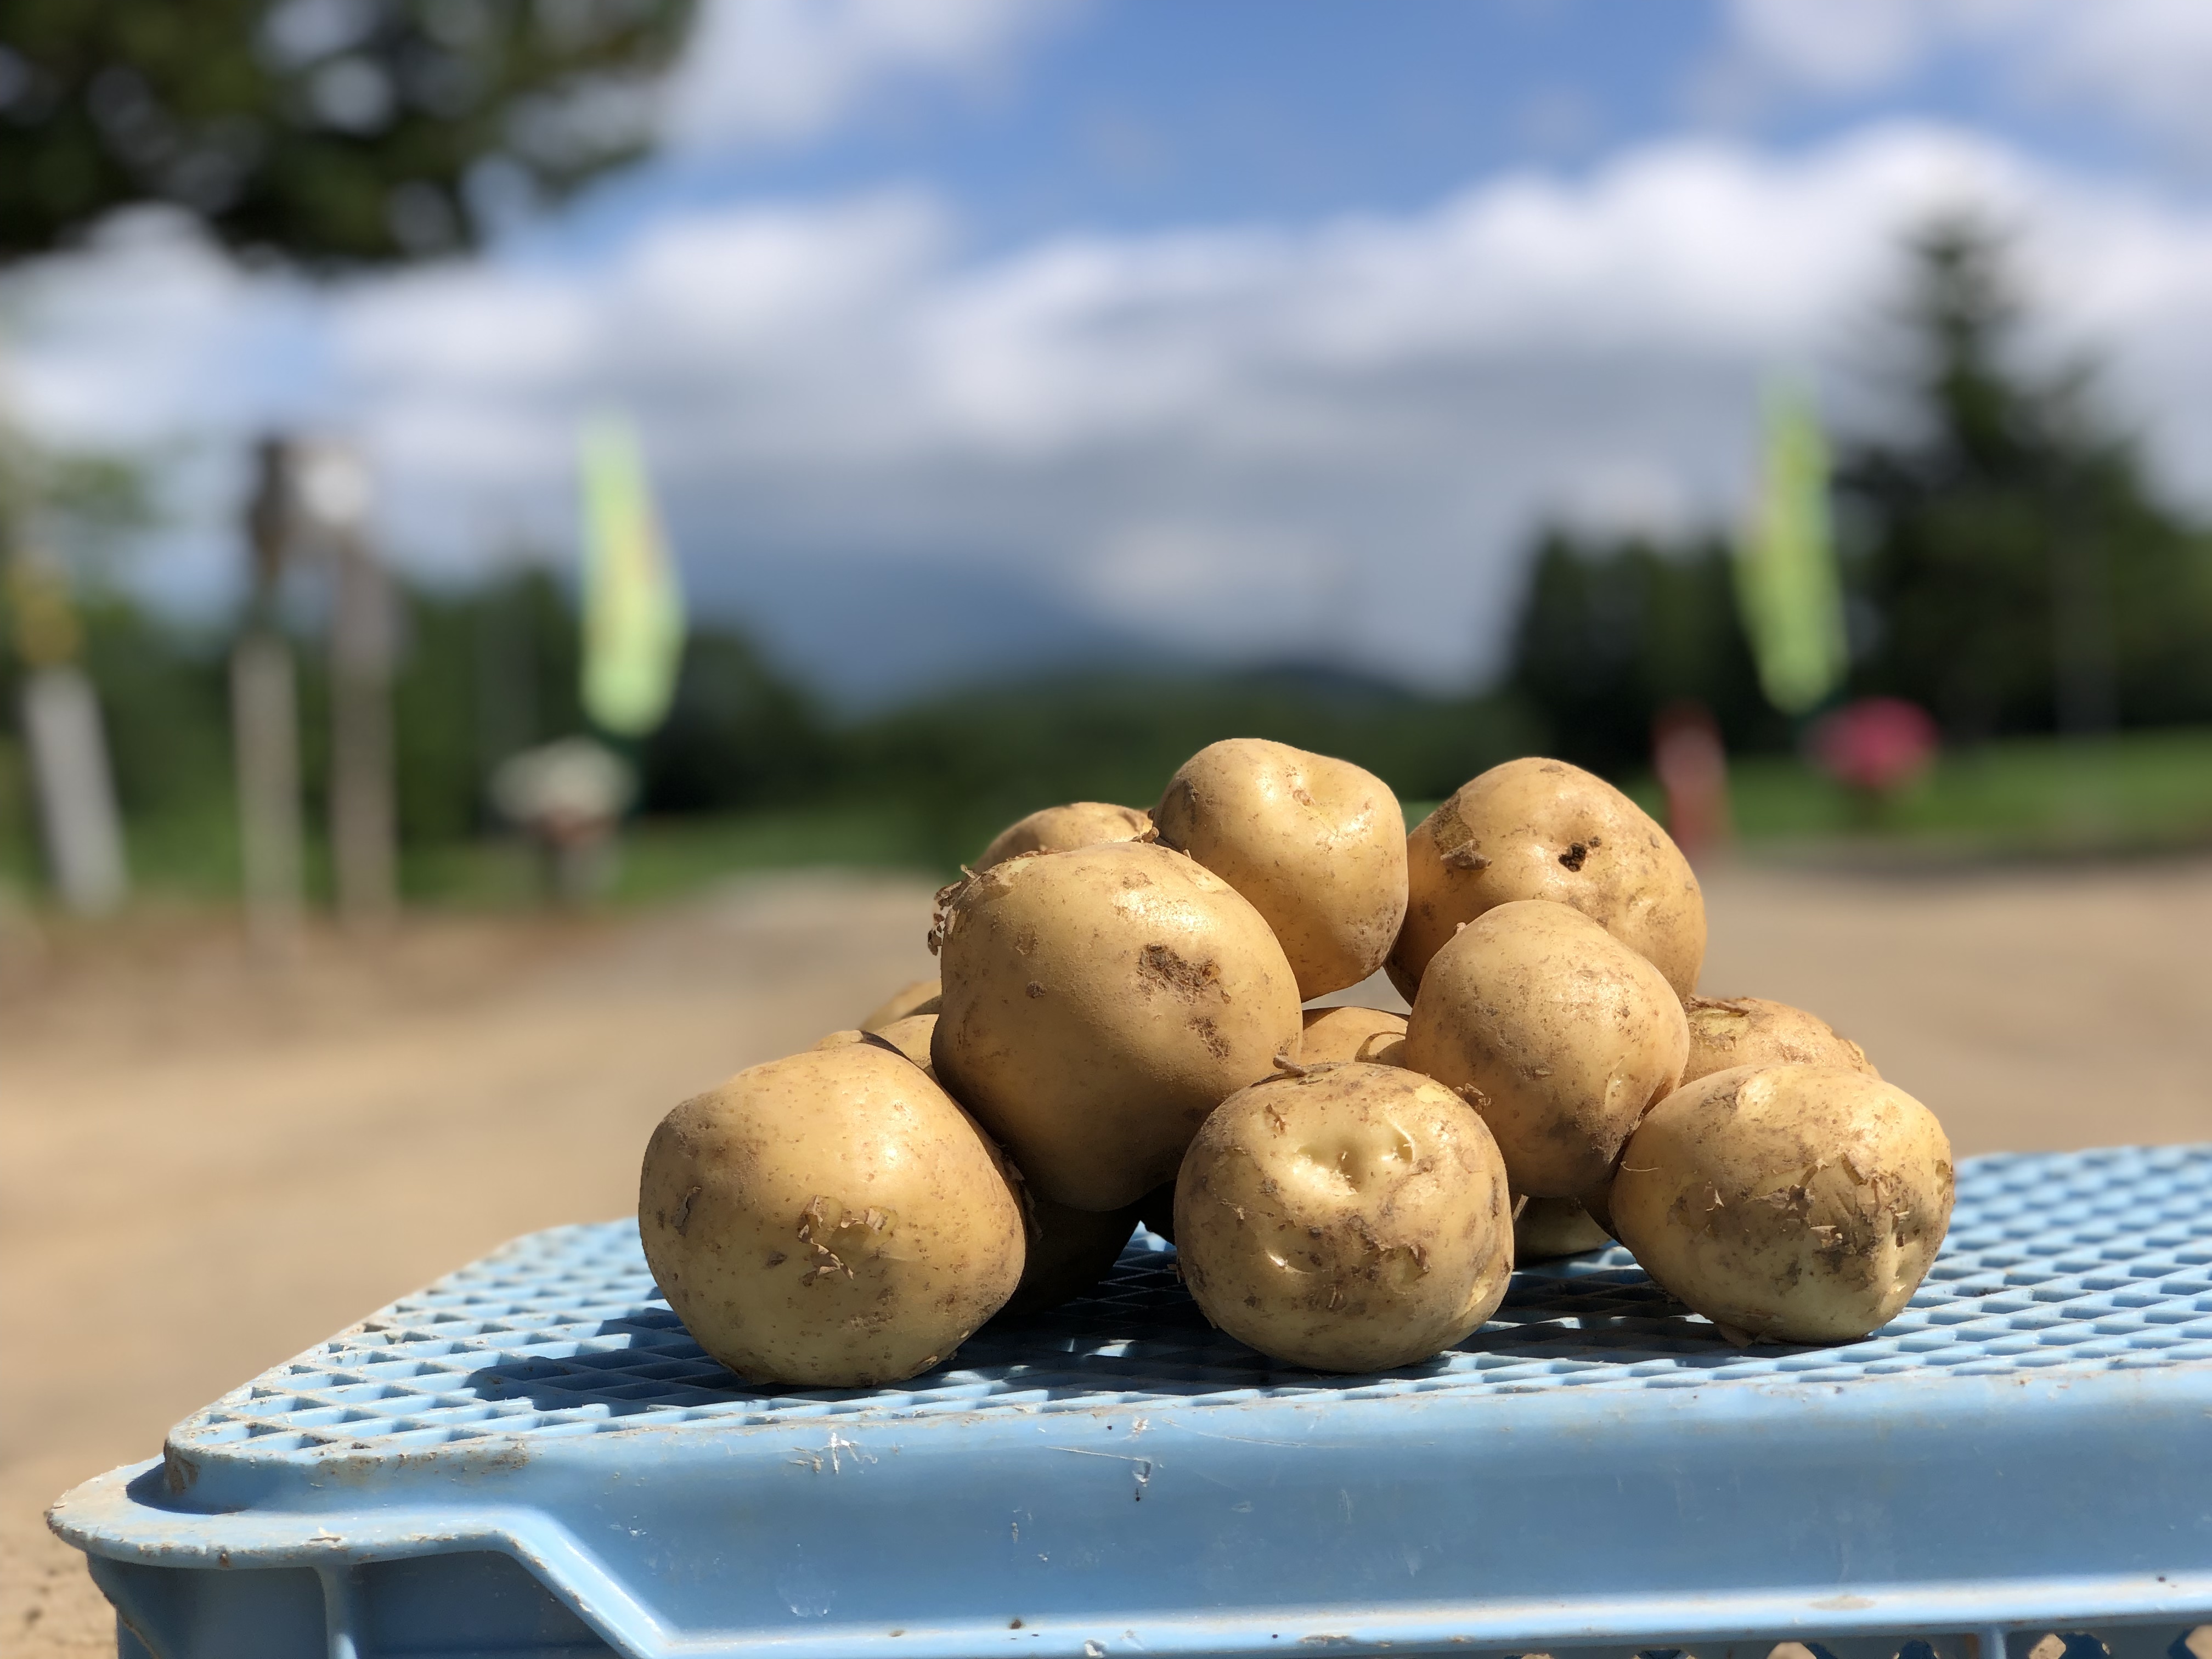 【数量限定】北海道 富良野産 新じゃが 込み玉 品種 とうや 約20kg